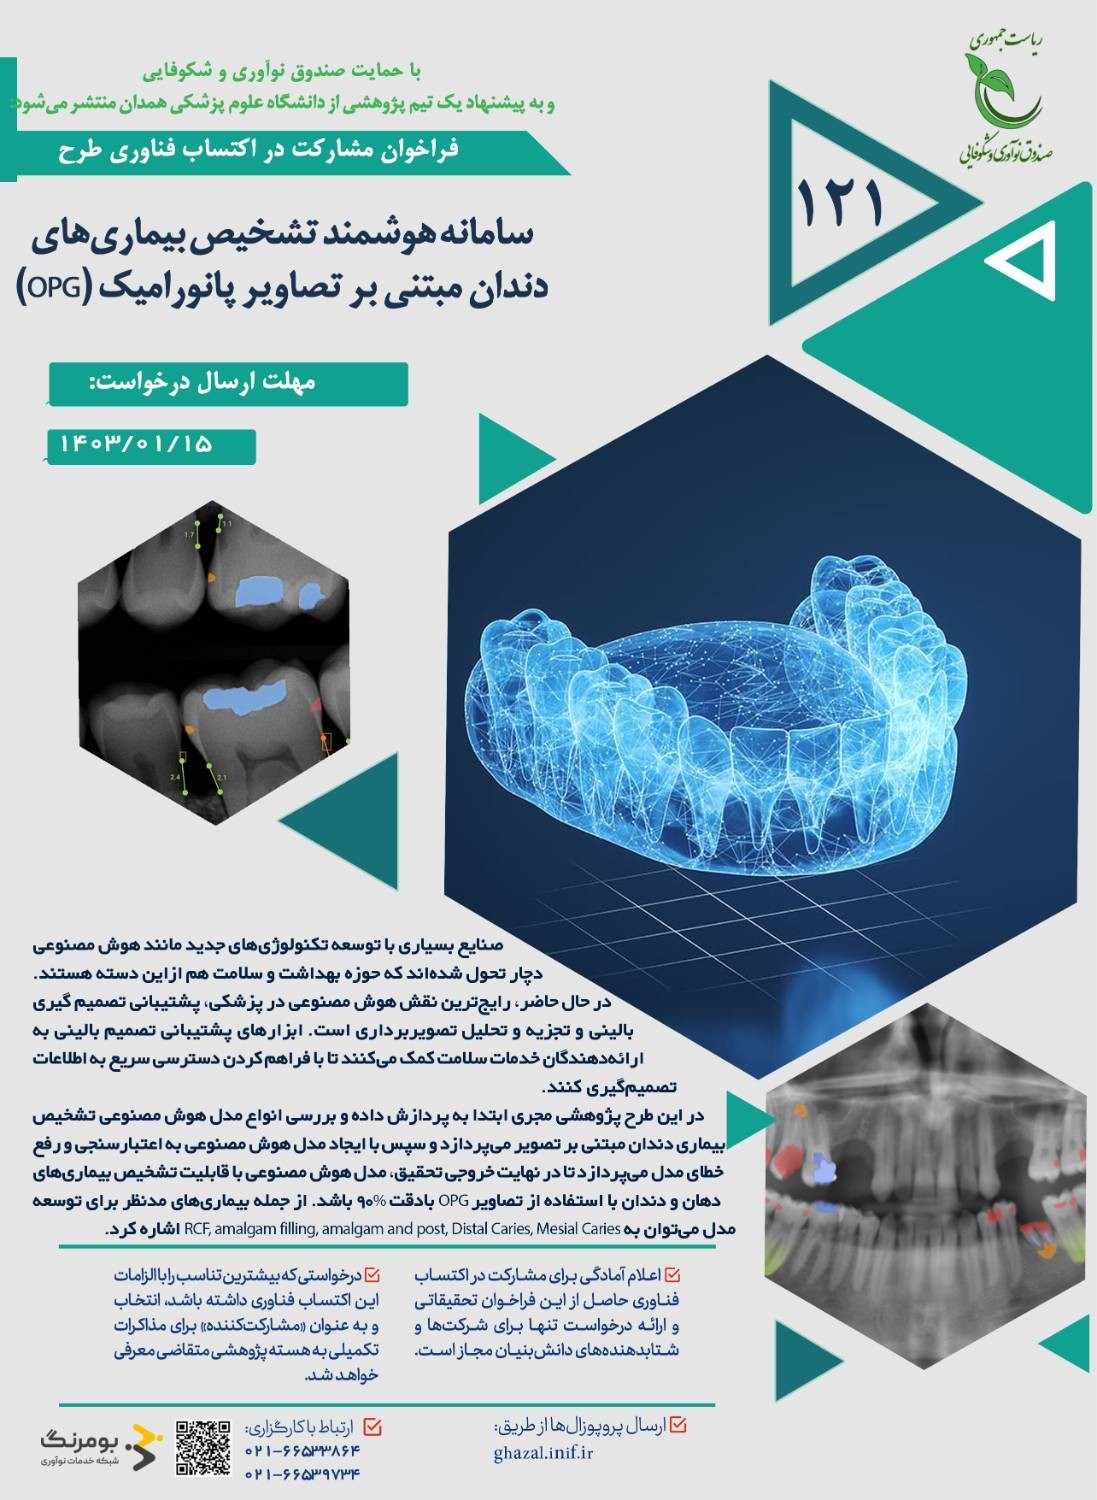 فراخوان پژوهشی با عنوان «سامانه هوشمند تشخیص بیماری‌های دندان مبتنی بر تصاویر پانورامیک (OPG)»